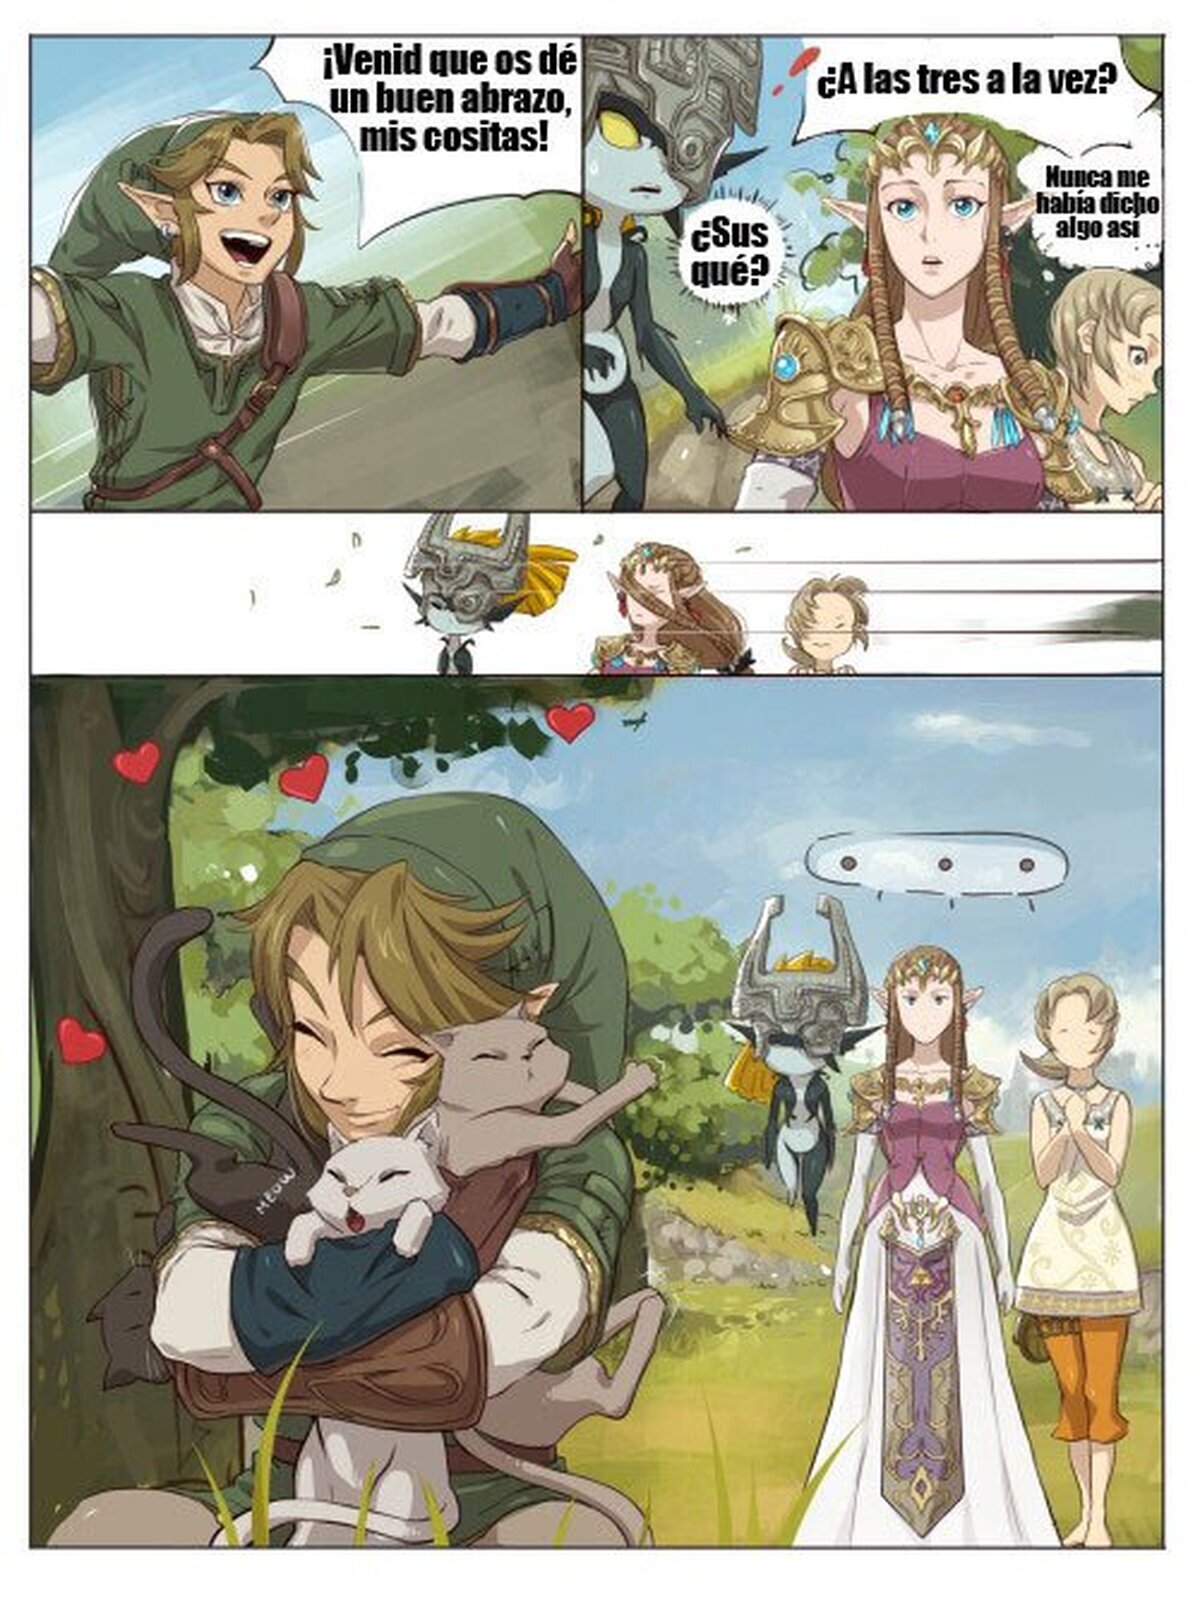 Las hembras preferidas de Link en Twilight Princess